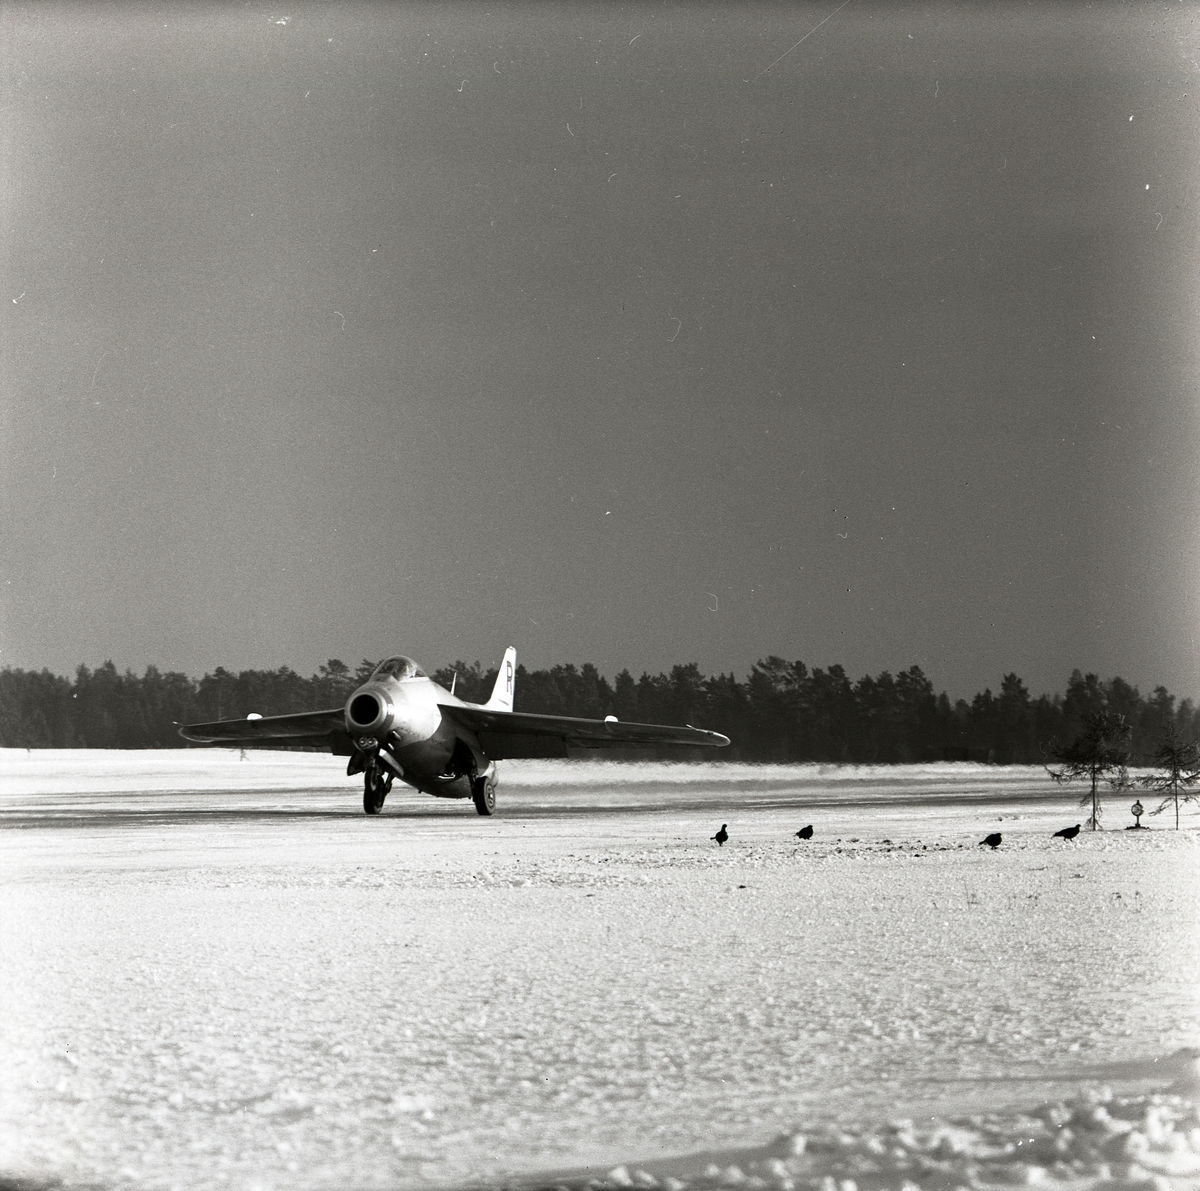 Ett startande flygplan av modell J29 Tunnan den 15 januari 1957 i Söderhamn. Runt startbanan finns några orrar.